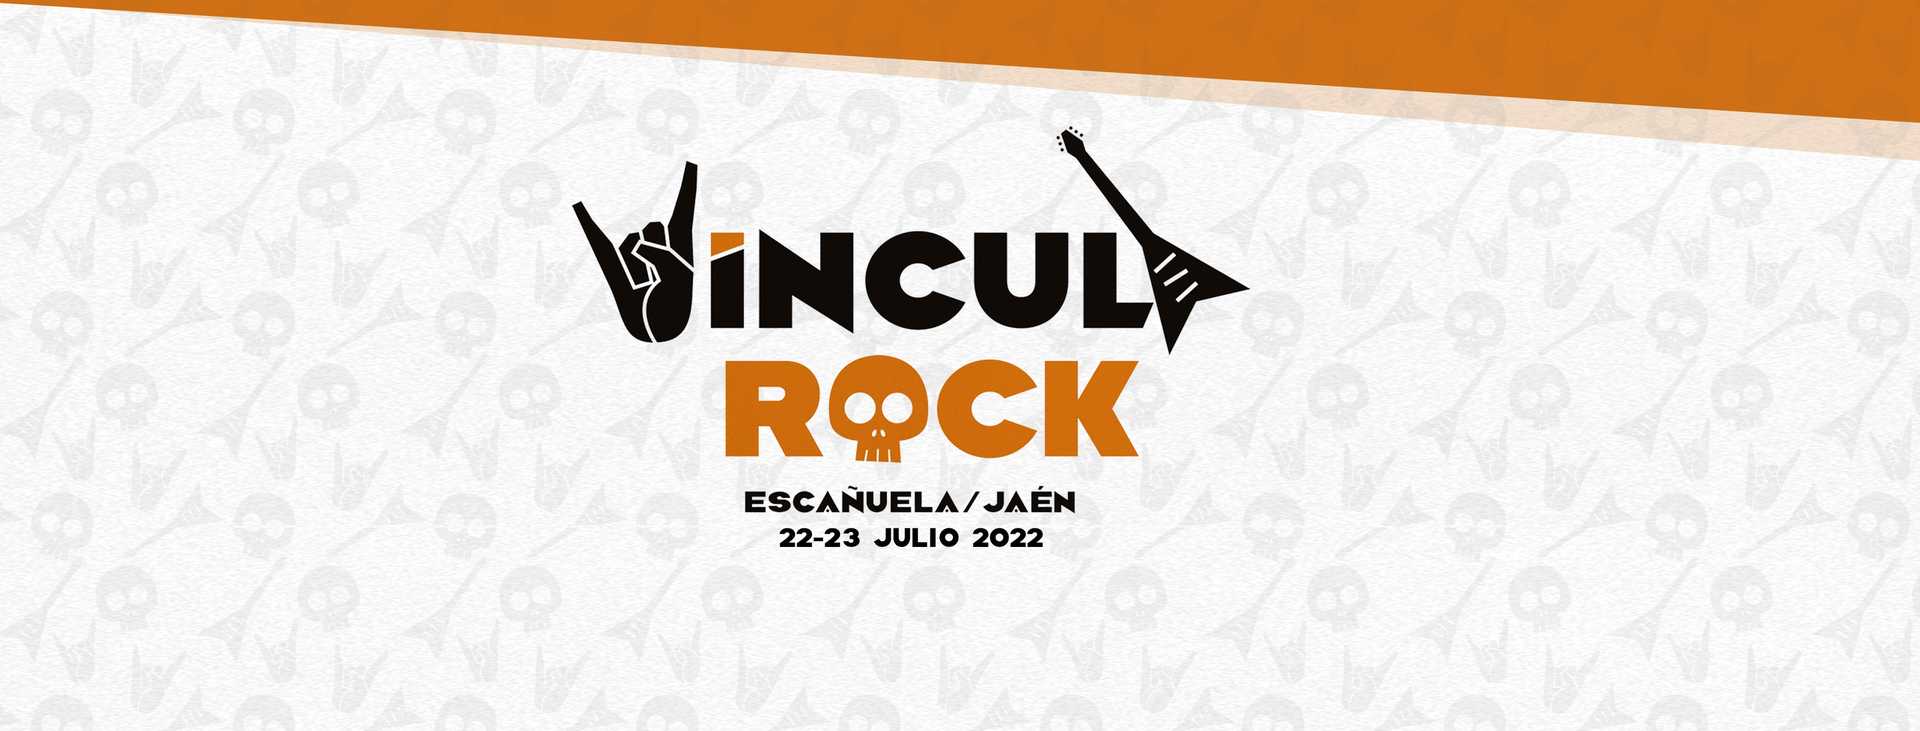 Festival Víncula Rock